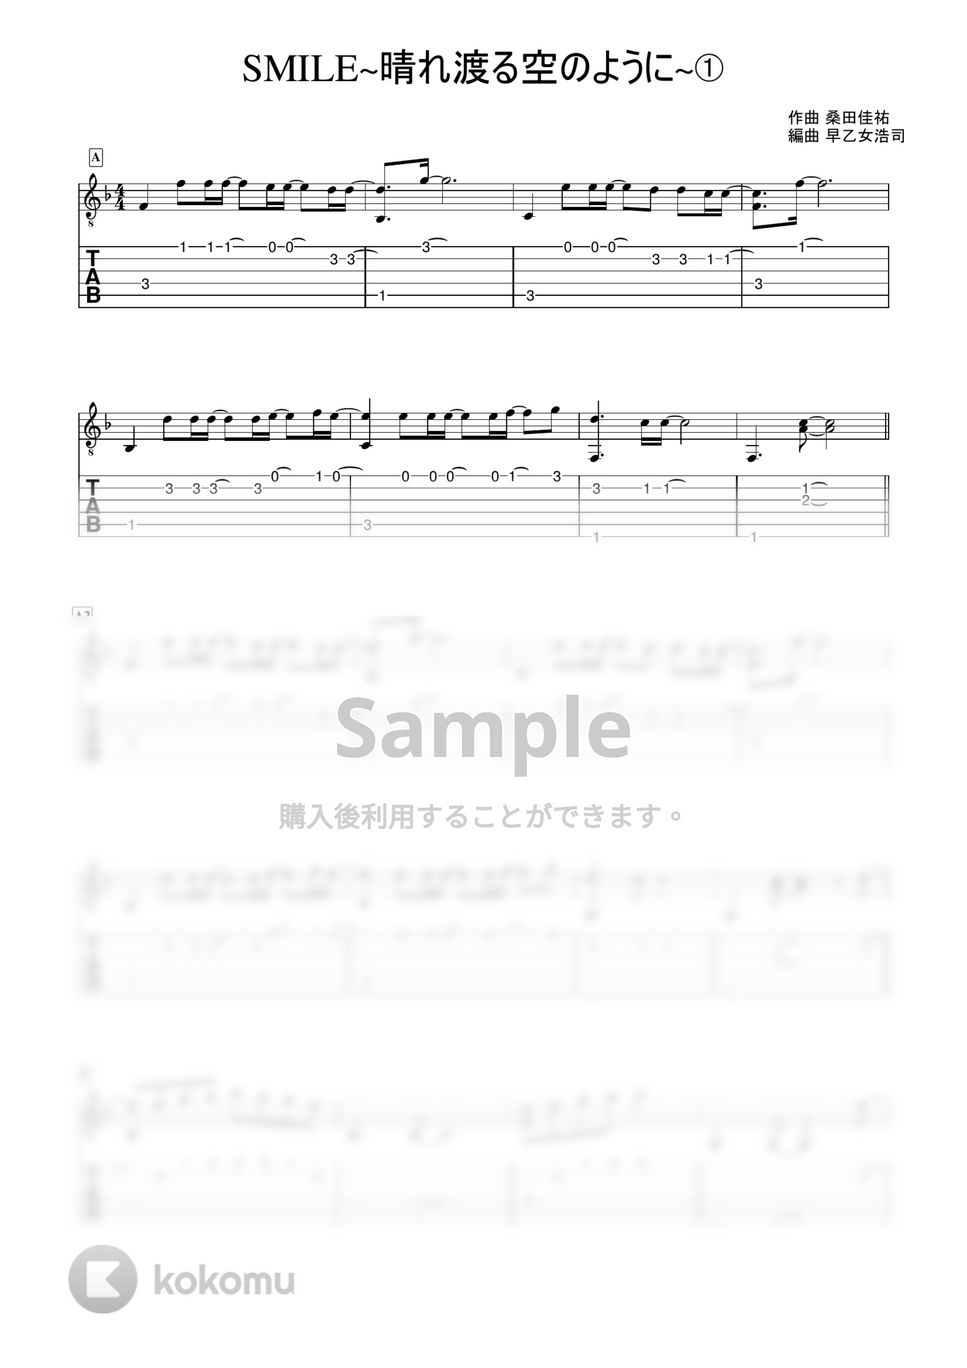 桑田佳祐 - SMILE~晴れ渡る空のように~ (かんたんソロギター) by 早乙女浩司